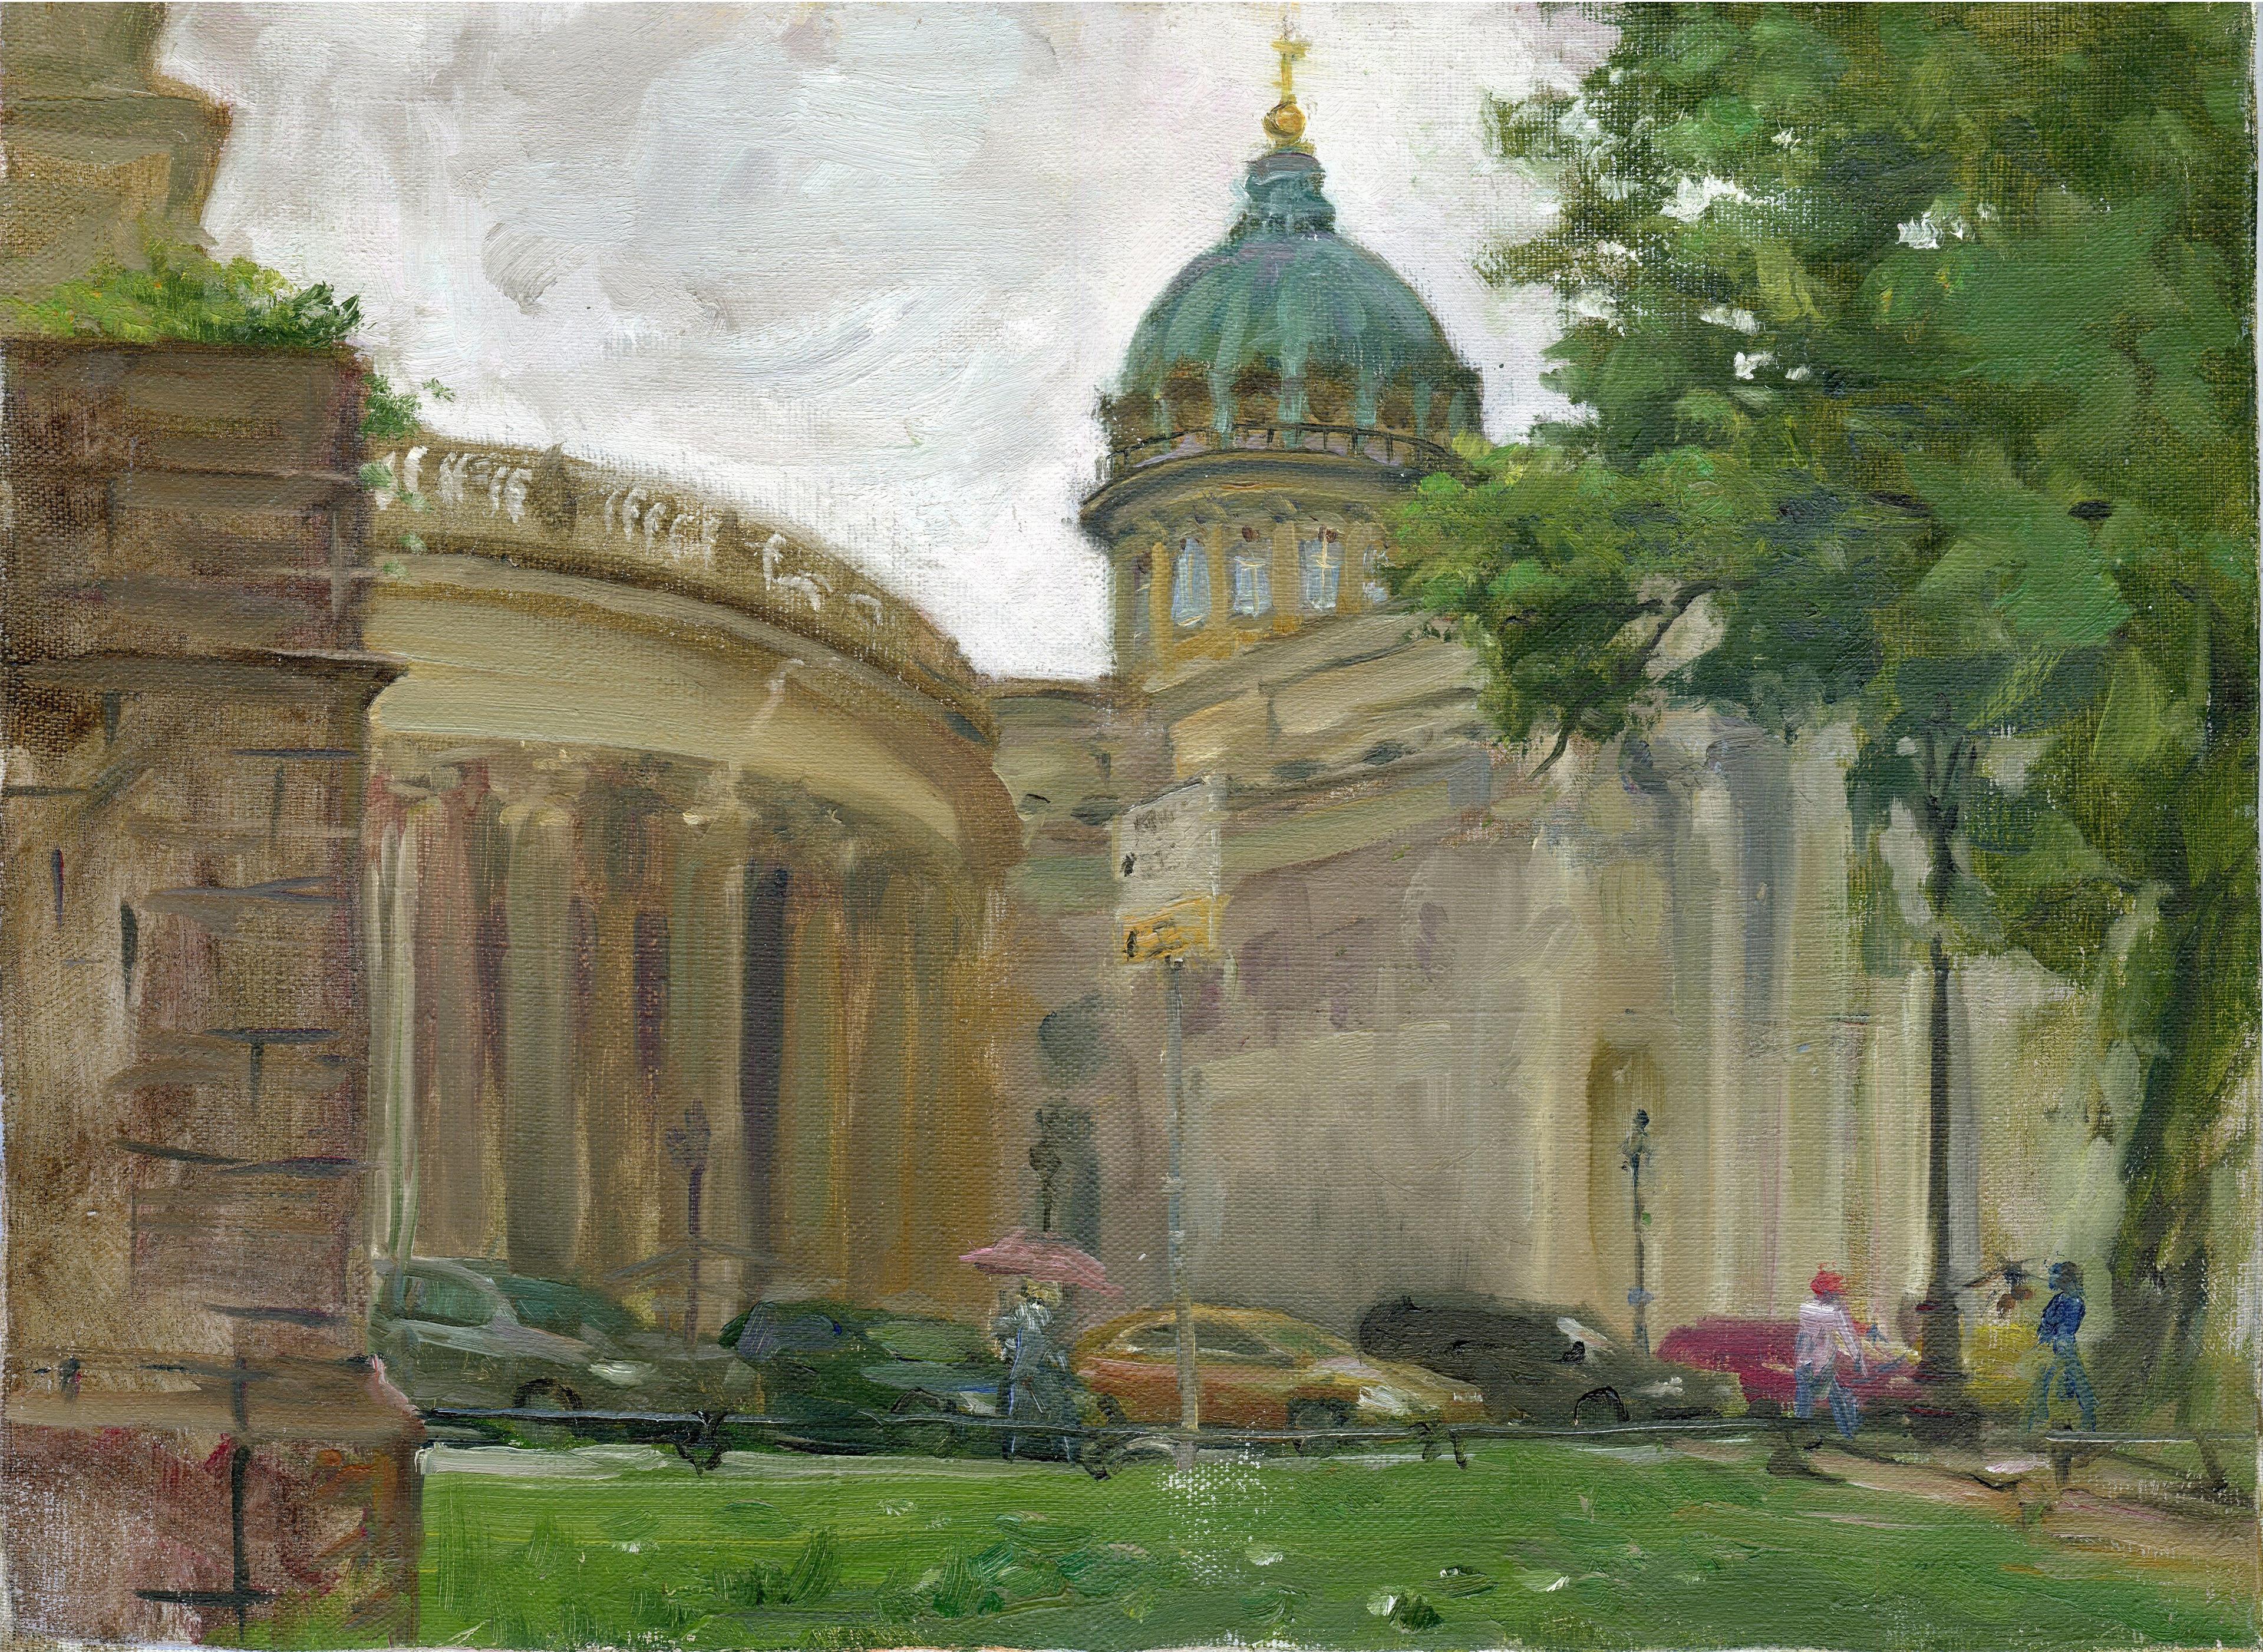 Купола казанского собора. Original modern art painting